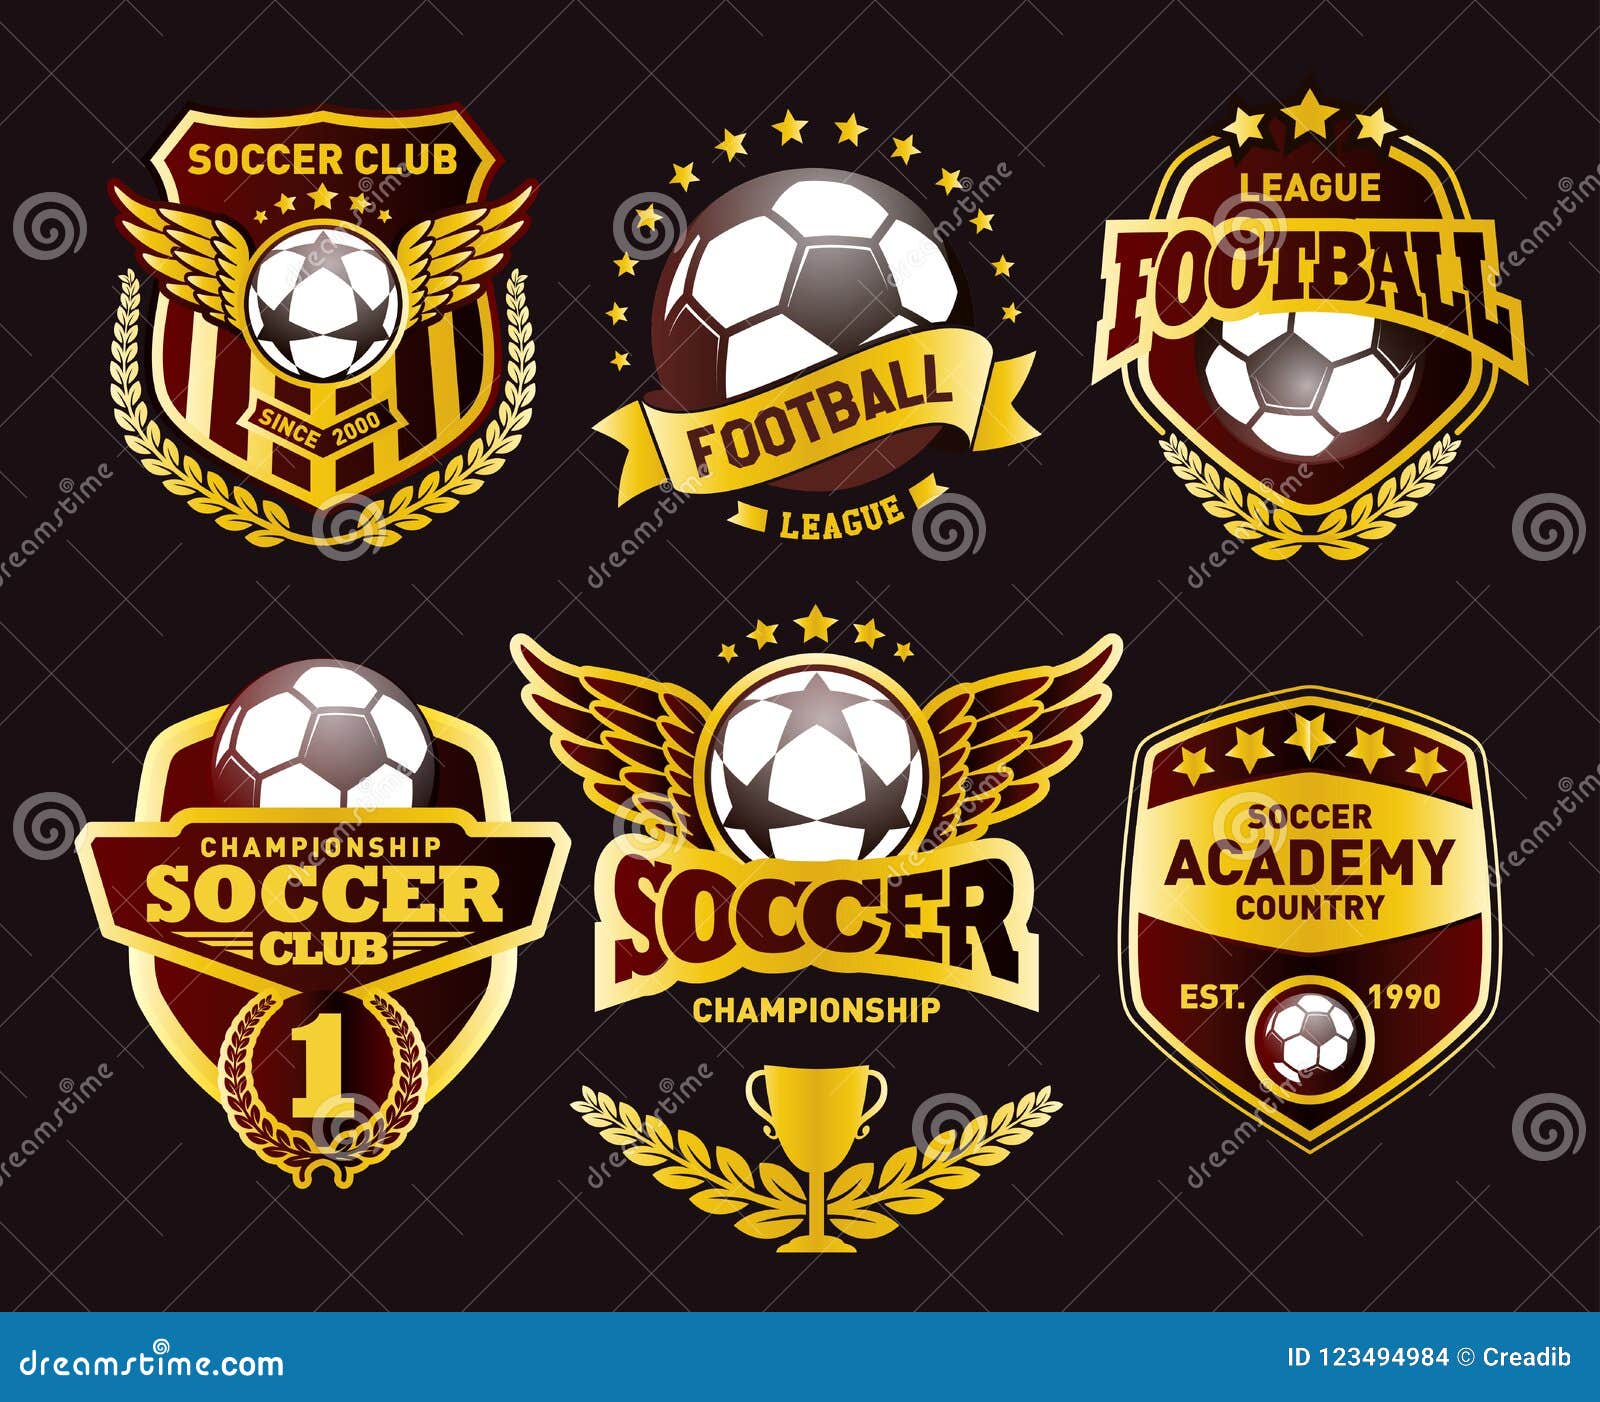 Set of Football Logo Design Templates, Soccer Vintage Golden Badge ...